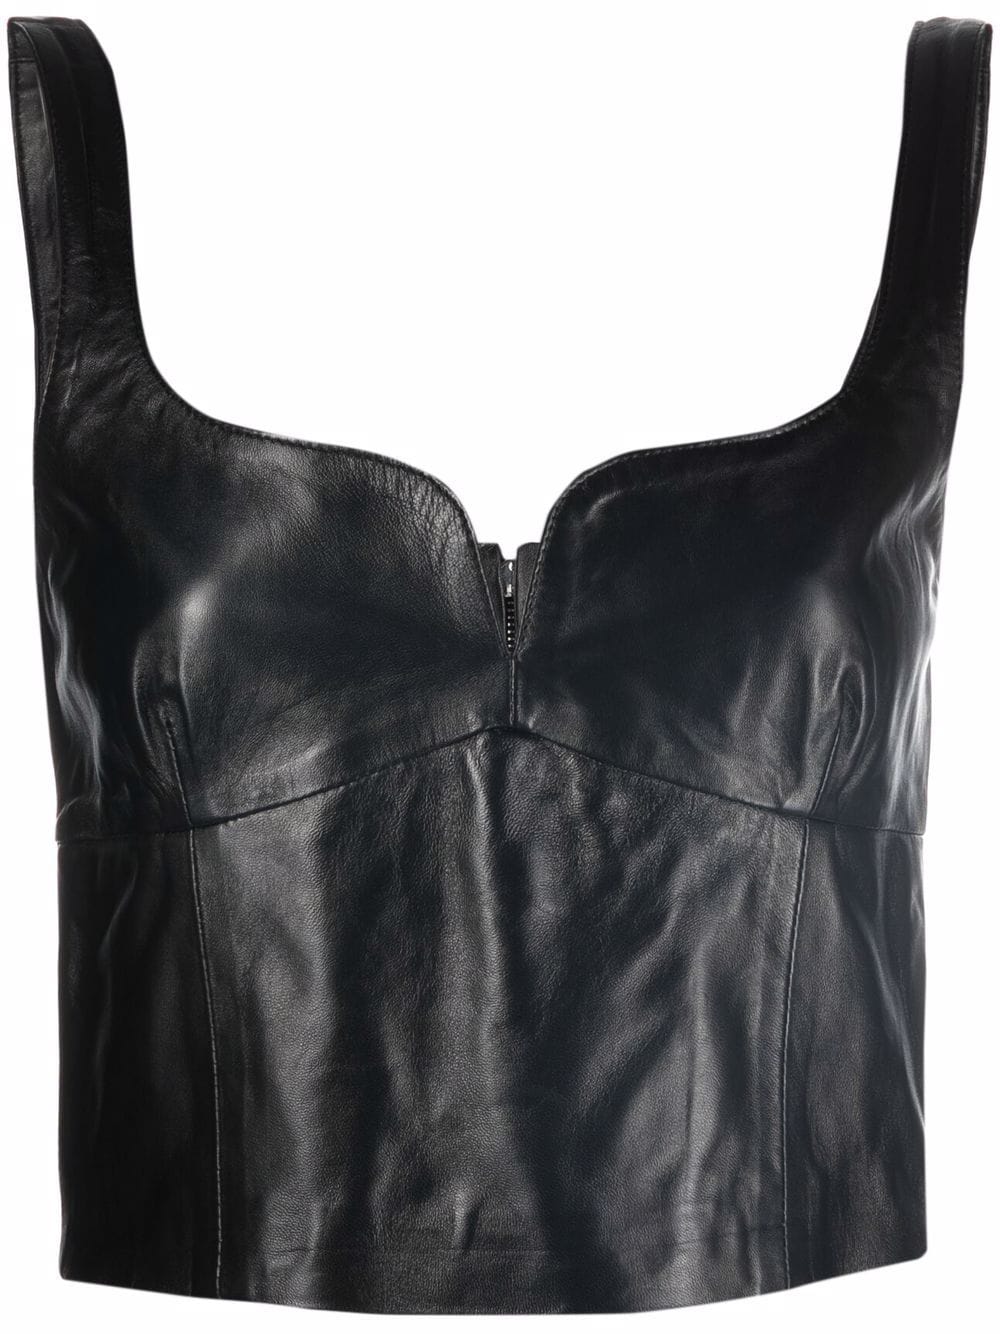 Image 1 of Manokhi cropped leather vest